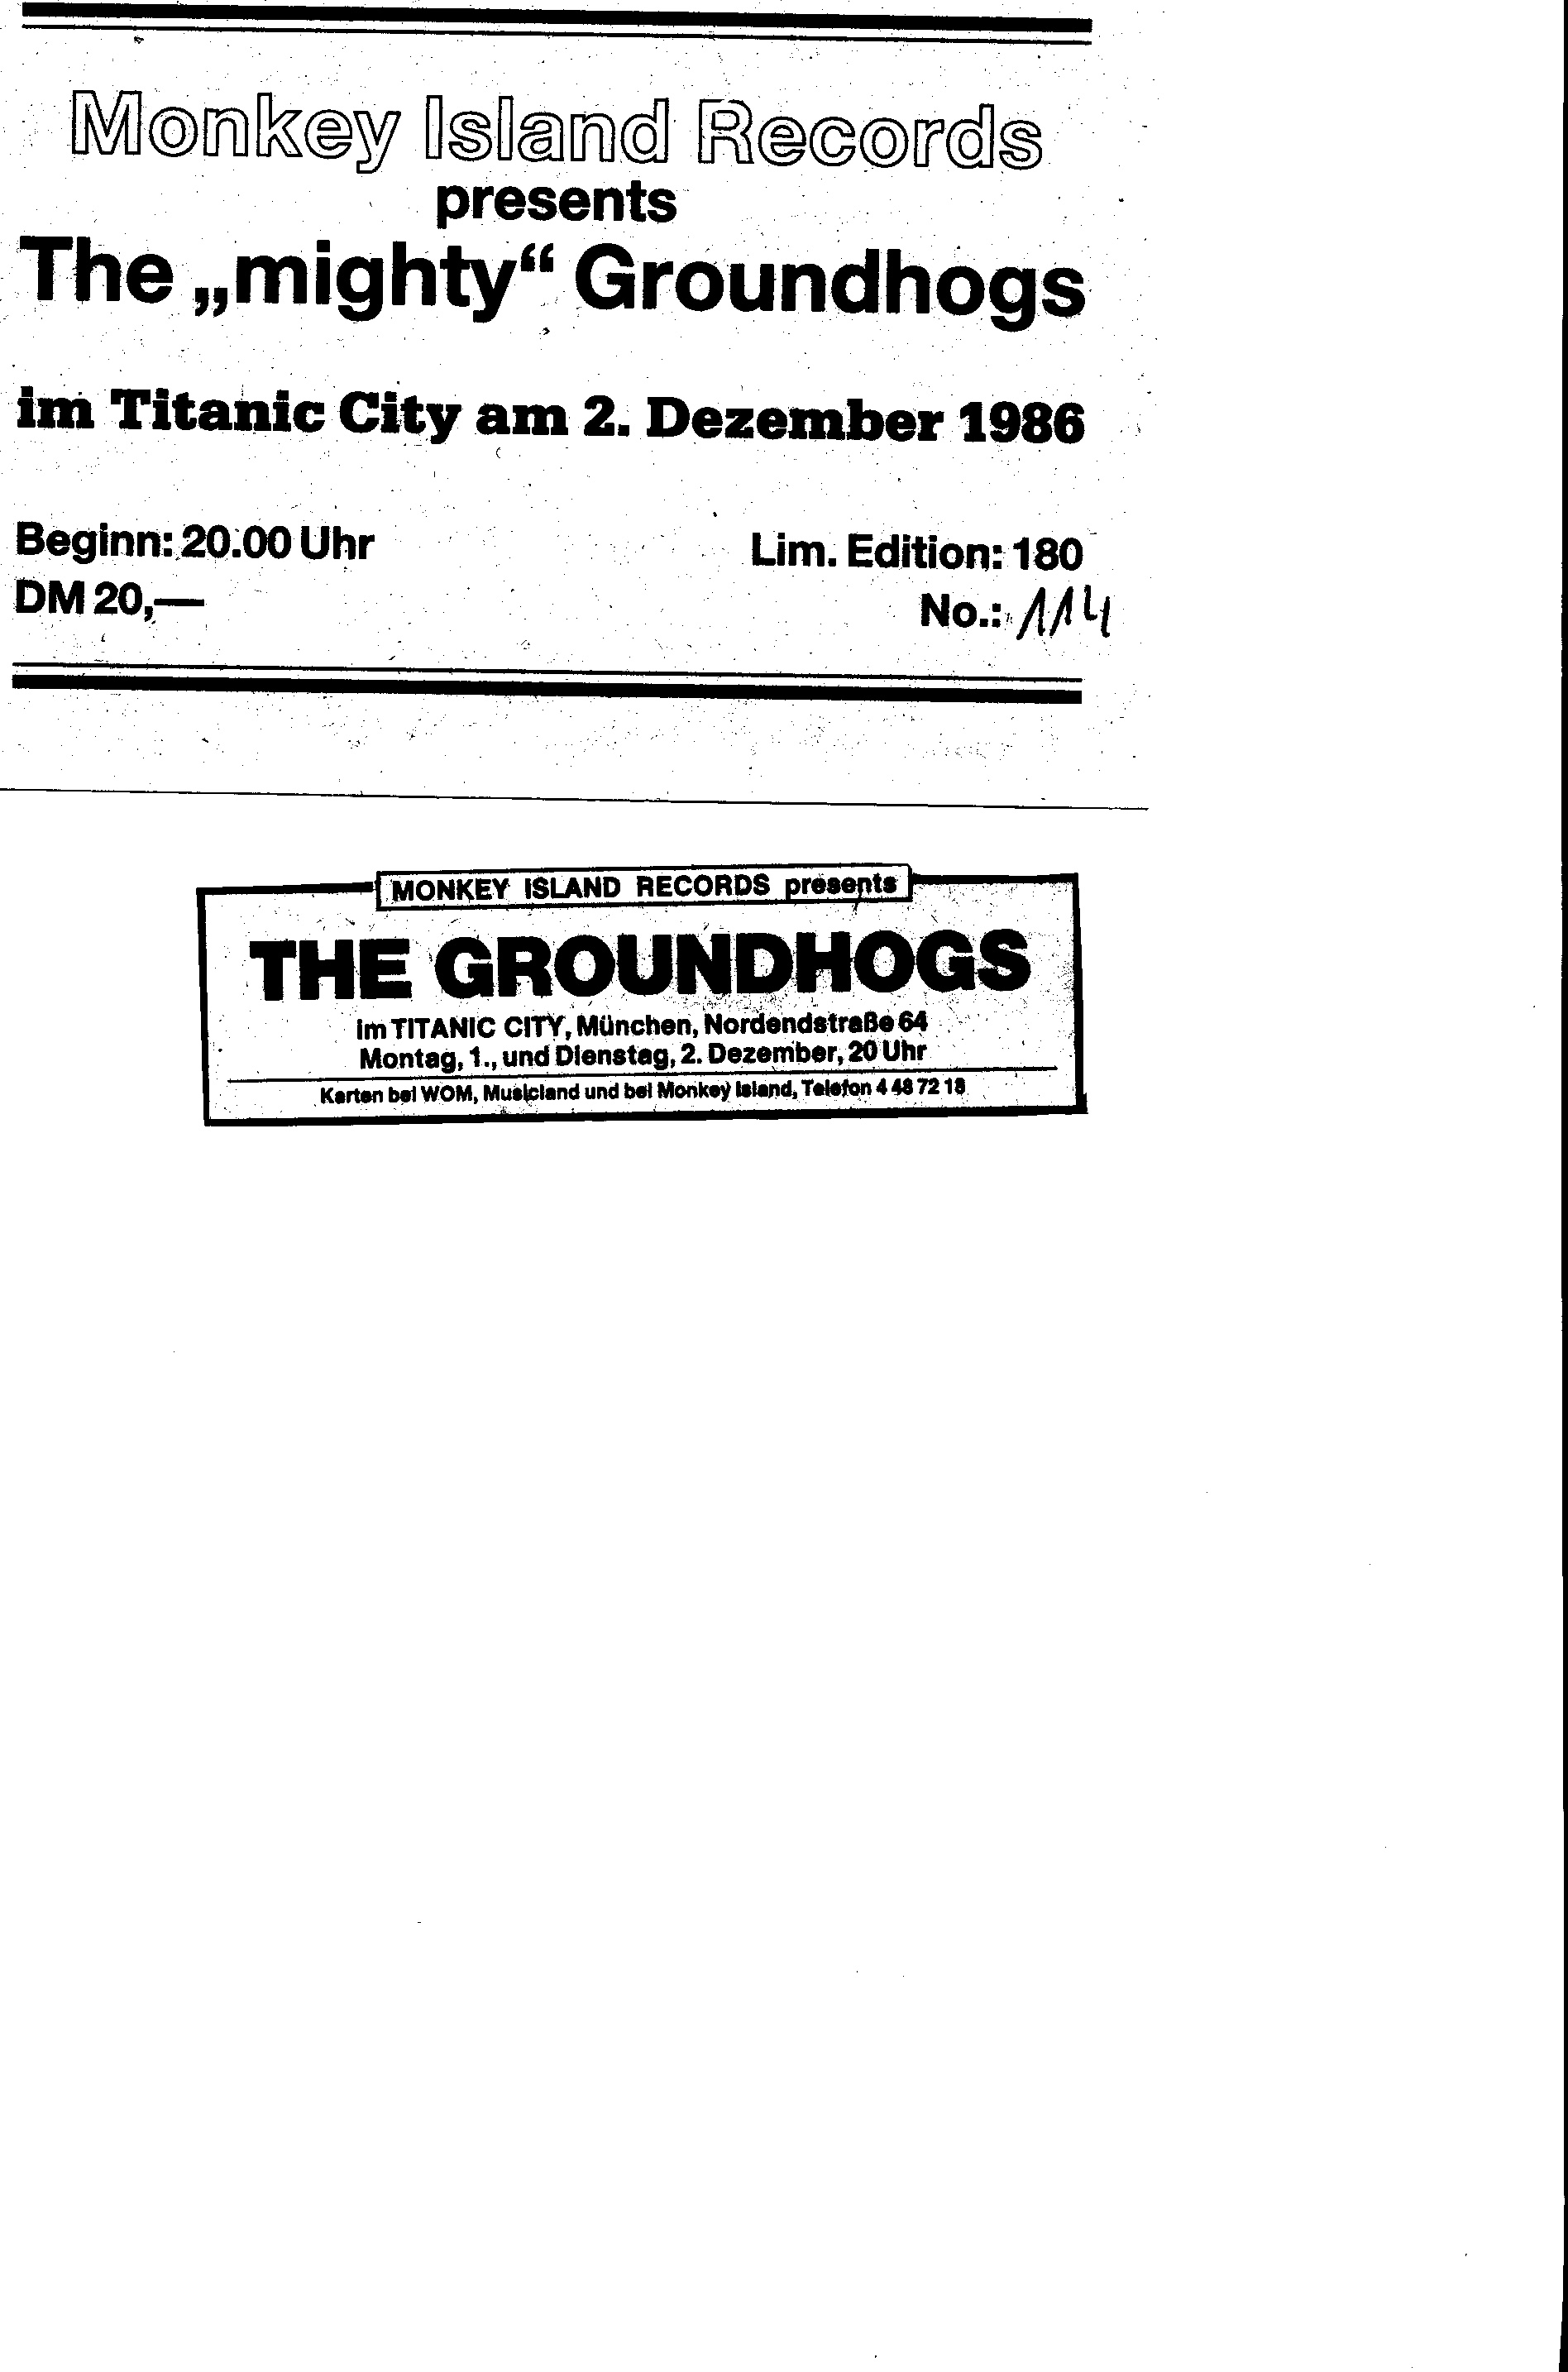 Groundhogs1986-12-02TitanicCityMunichGermany (1).JPG